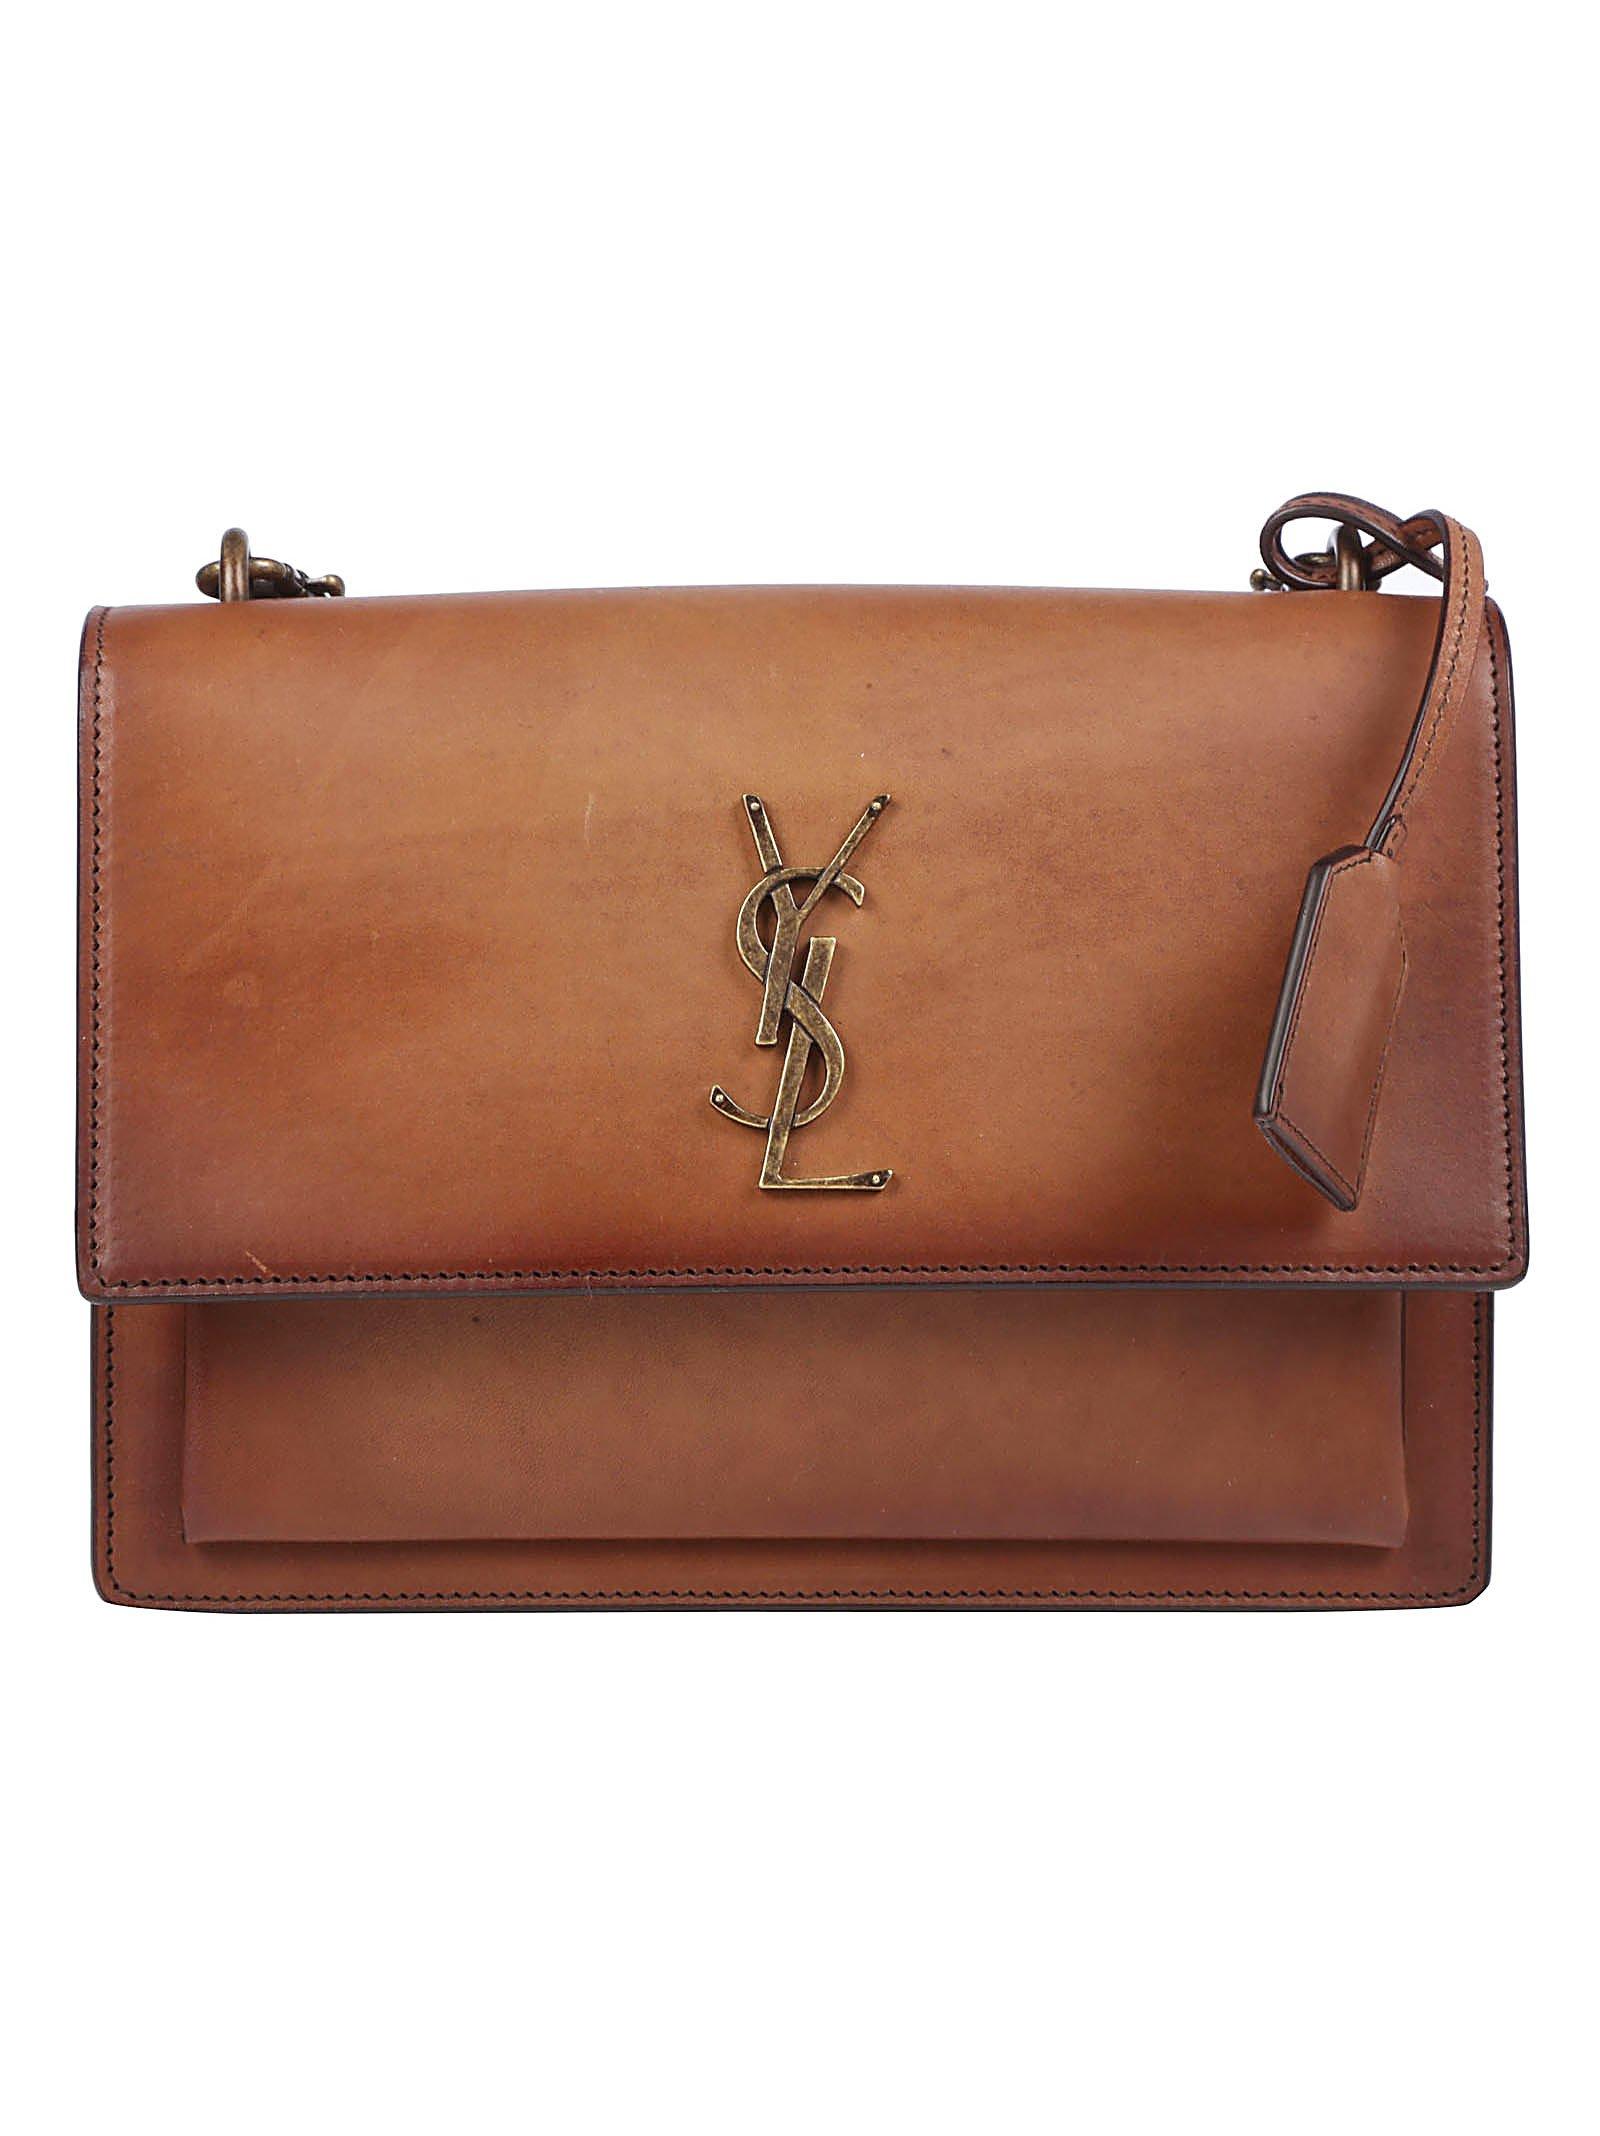 Sunset medium YSL-plaque leather shoulder bag